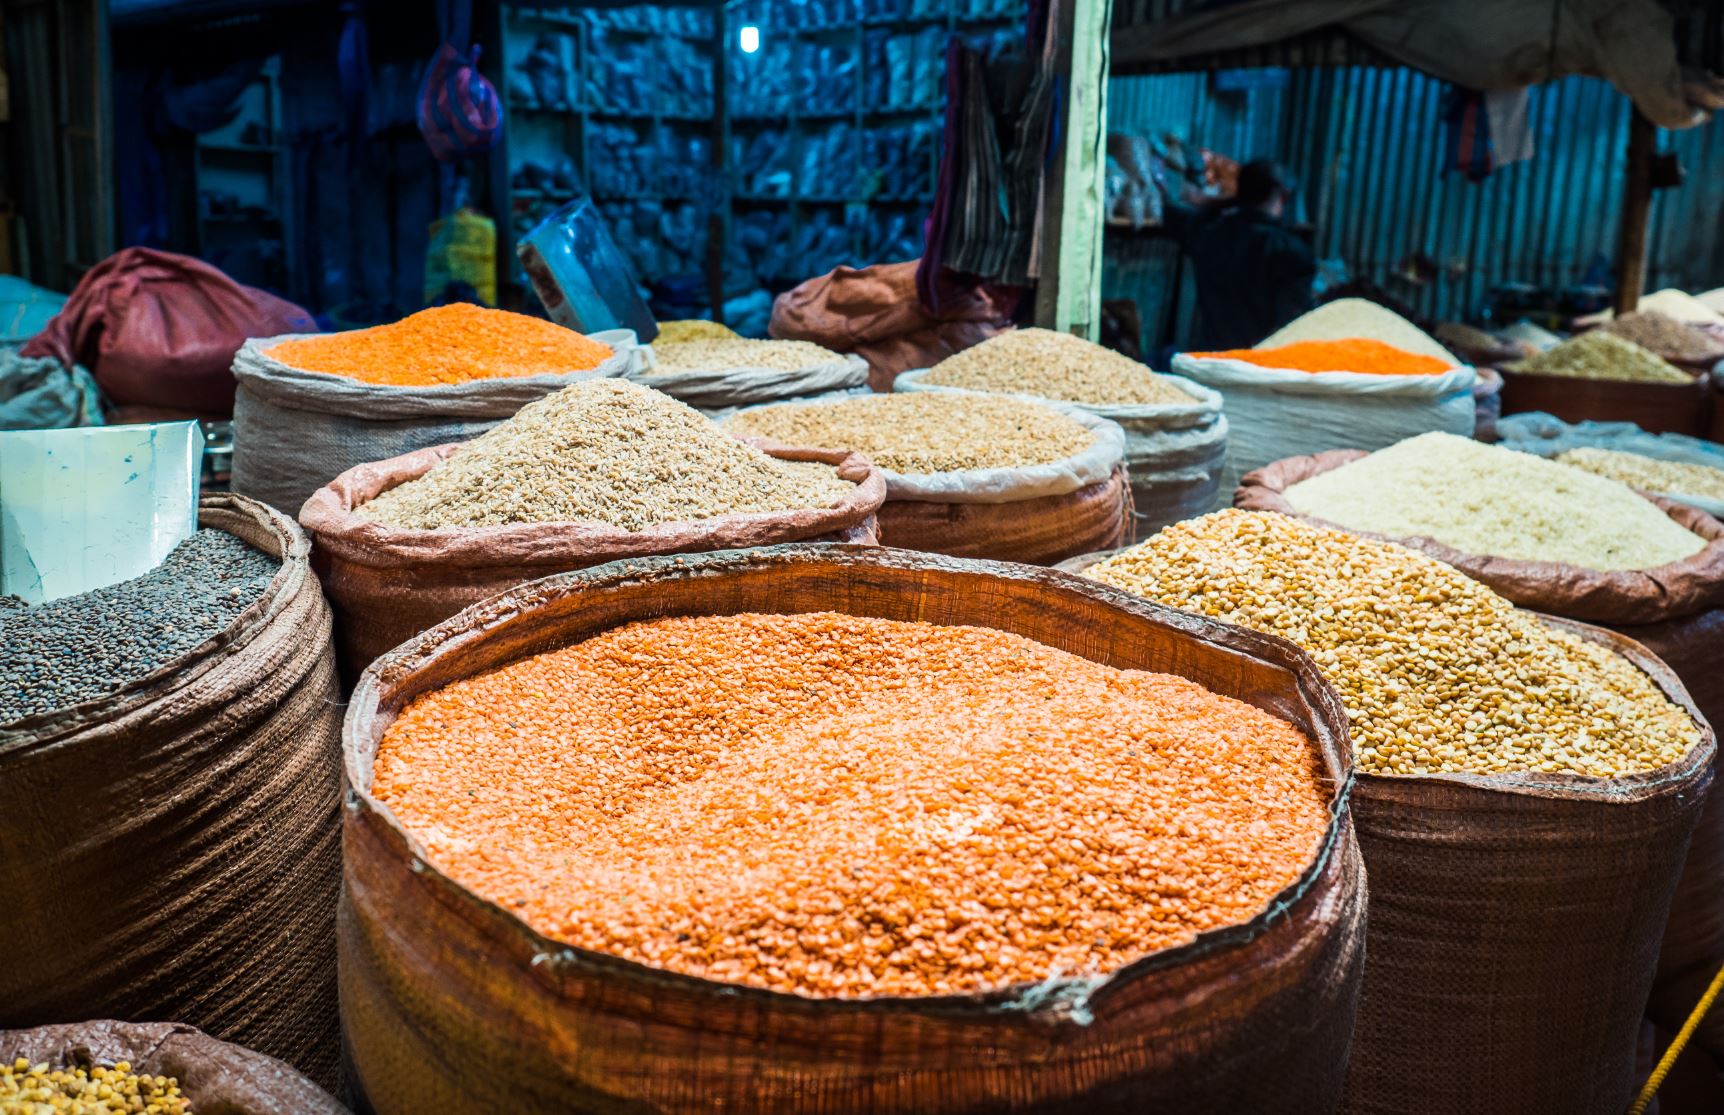 Bag of grain (lentils) in market